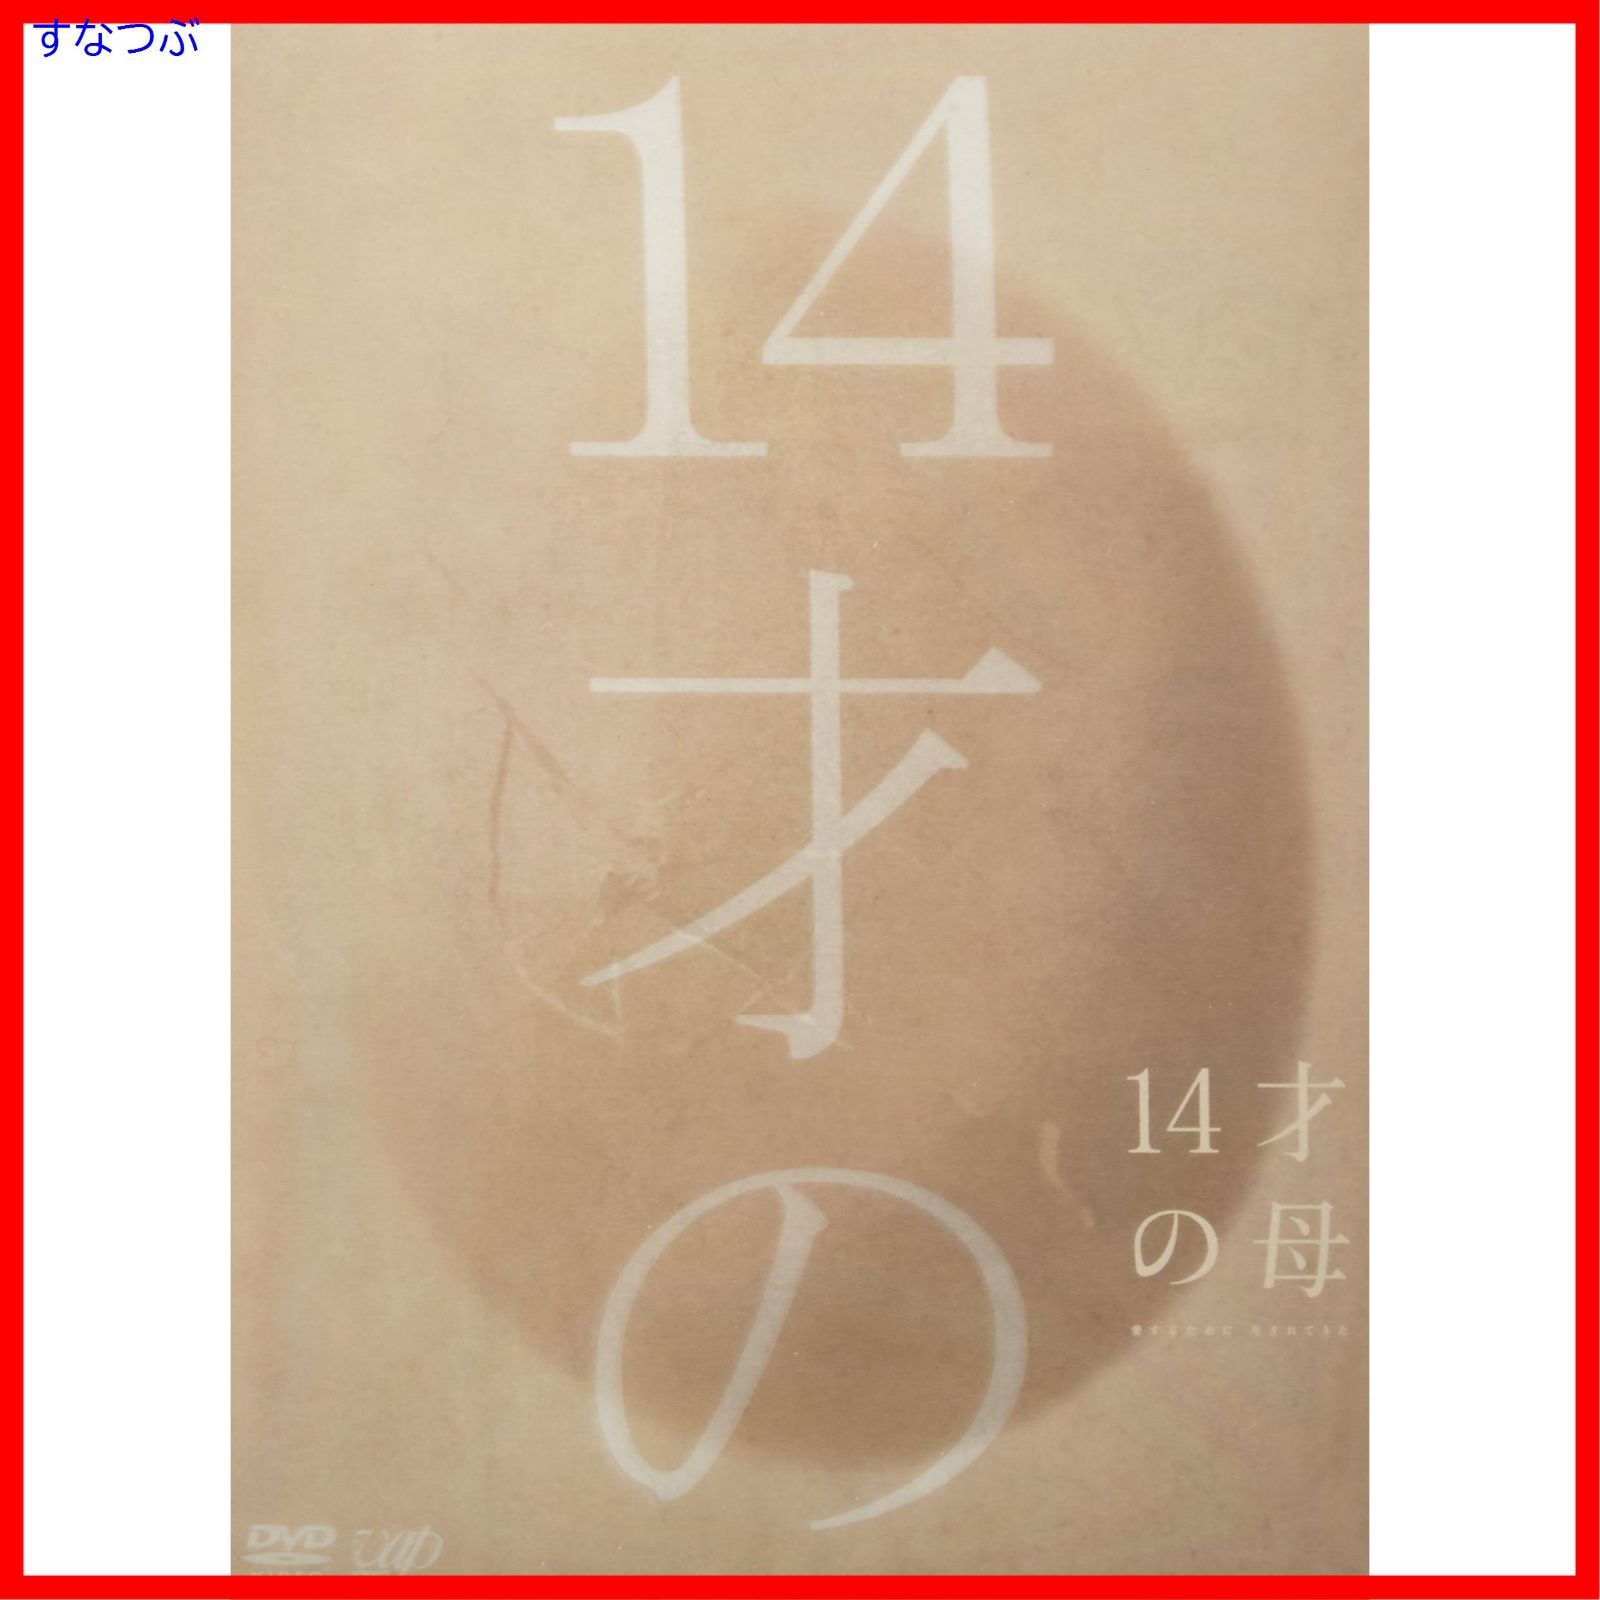 【新品未開封】14才の母 愛するために 生まれてきた DVD-BOX 志田未来 (出演) 田中美佐子 (出演) 形式: DVD